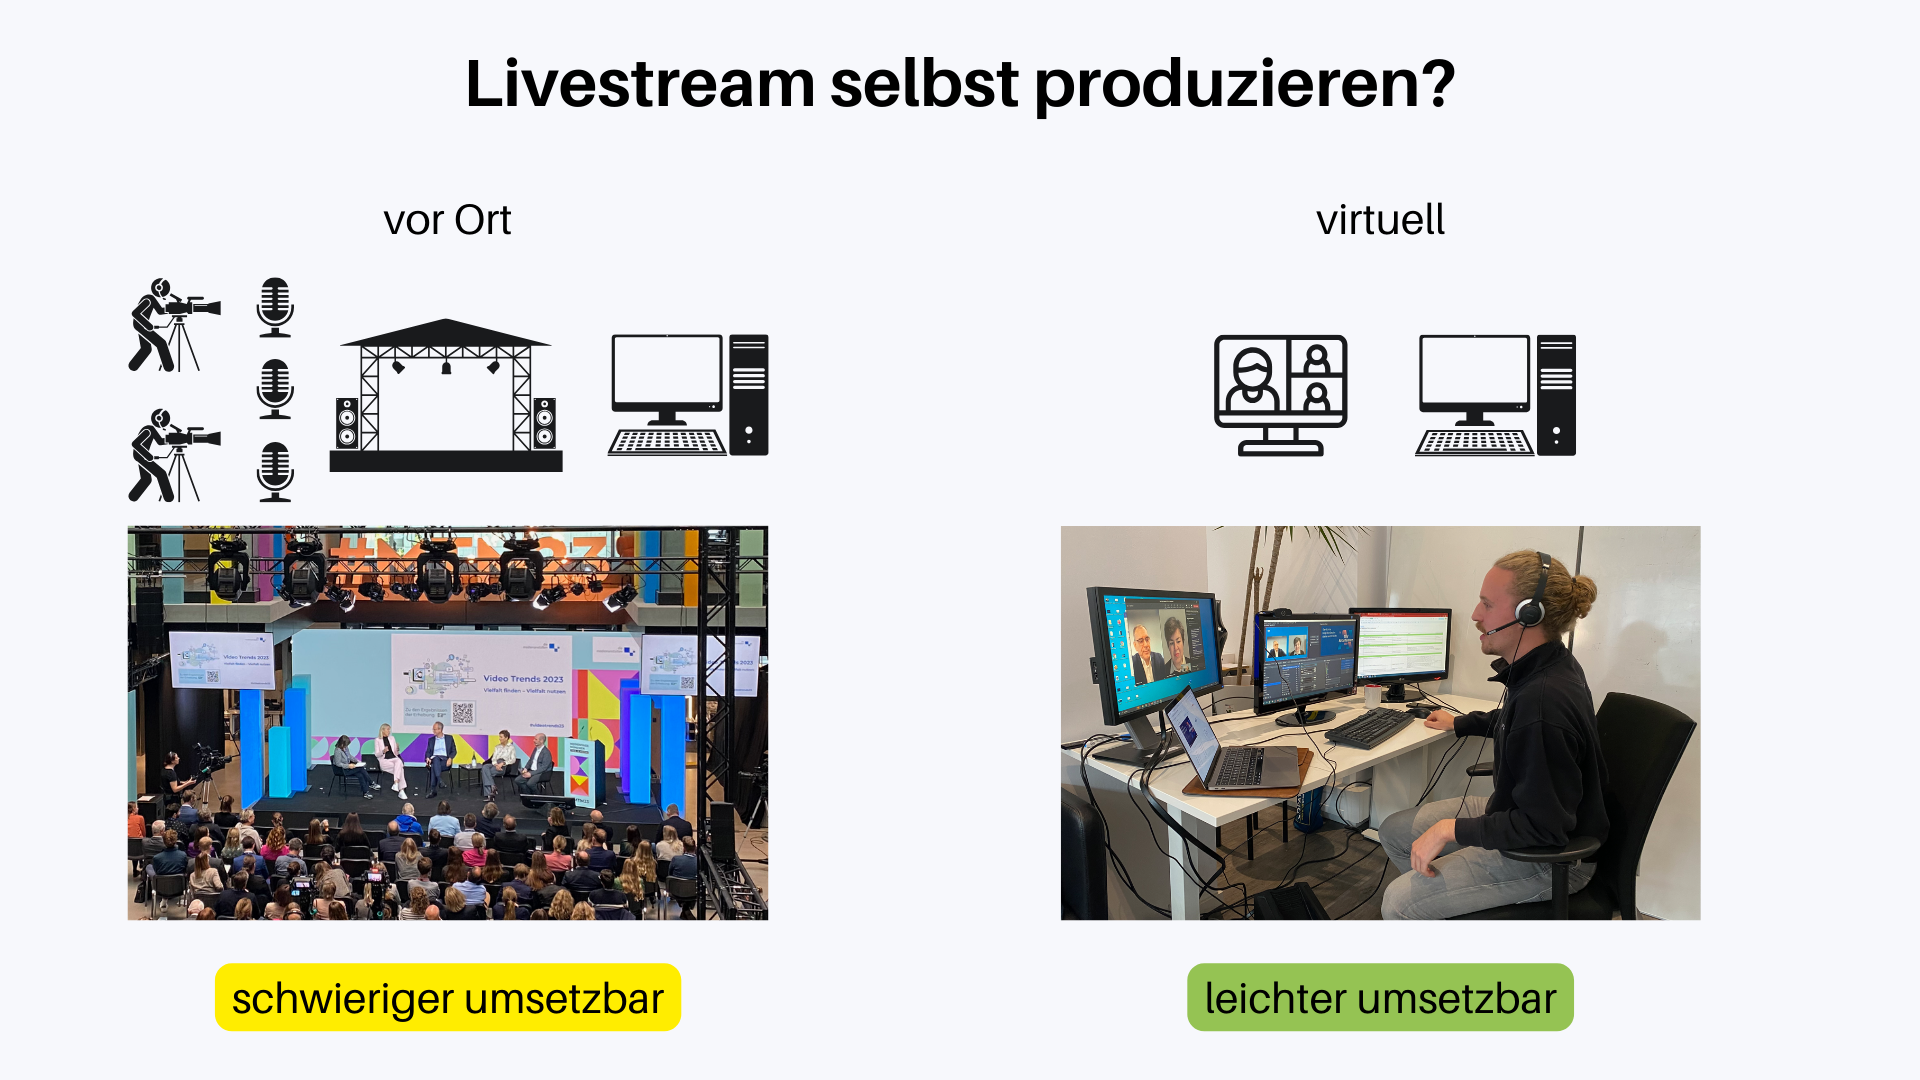 Hier wird visuell dargestellt, wie ein Livestream selbst produziert wird. Es wird unterschieden zwischen einer vor-Ort Veranstaltung und einer virtuellen Veranstaltung.